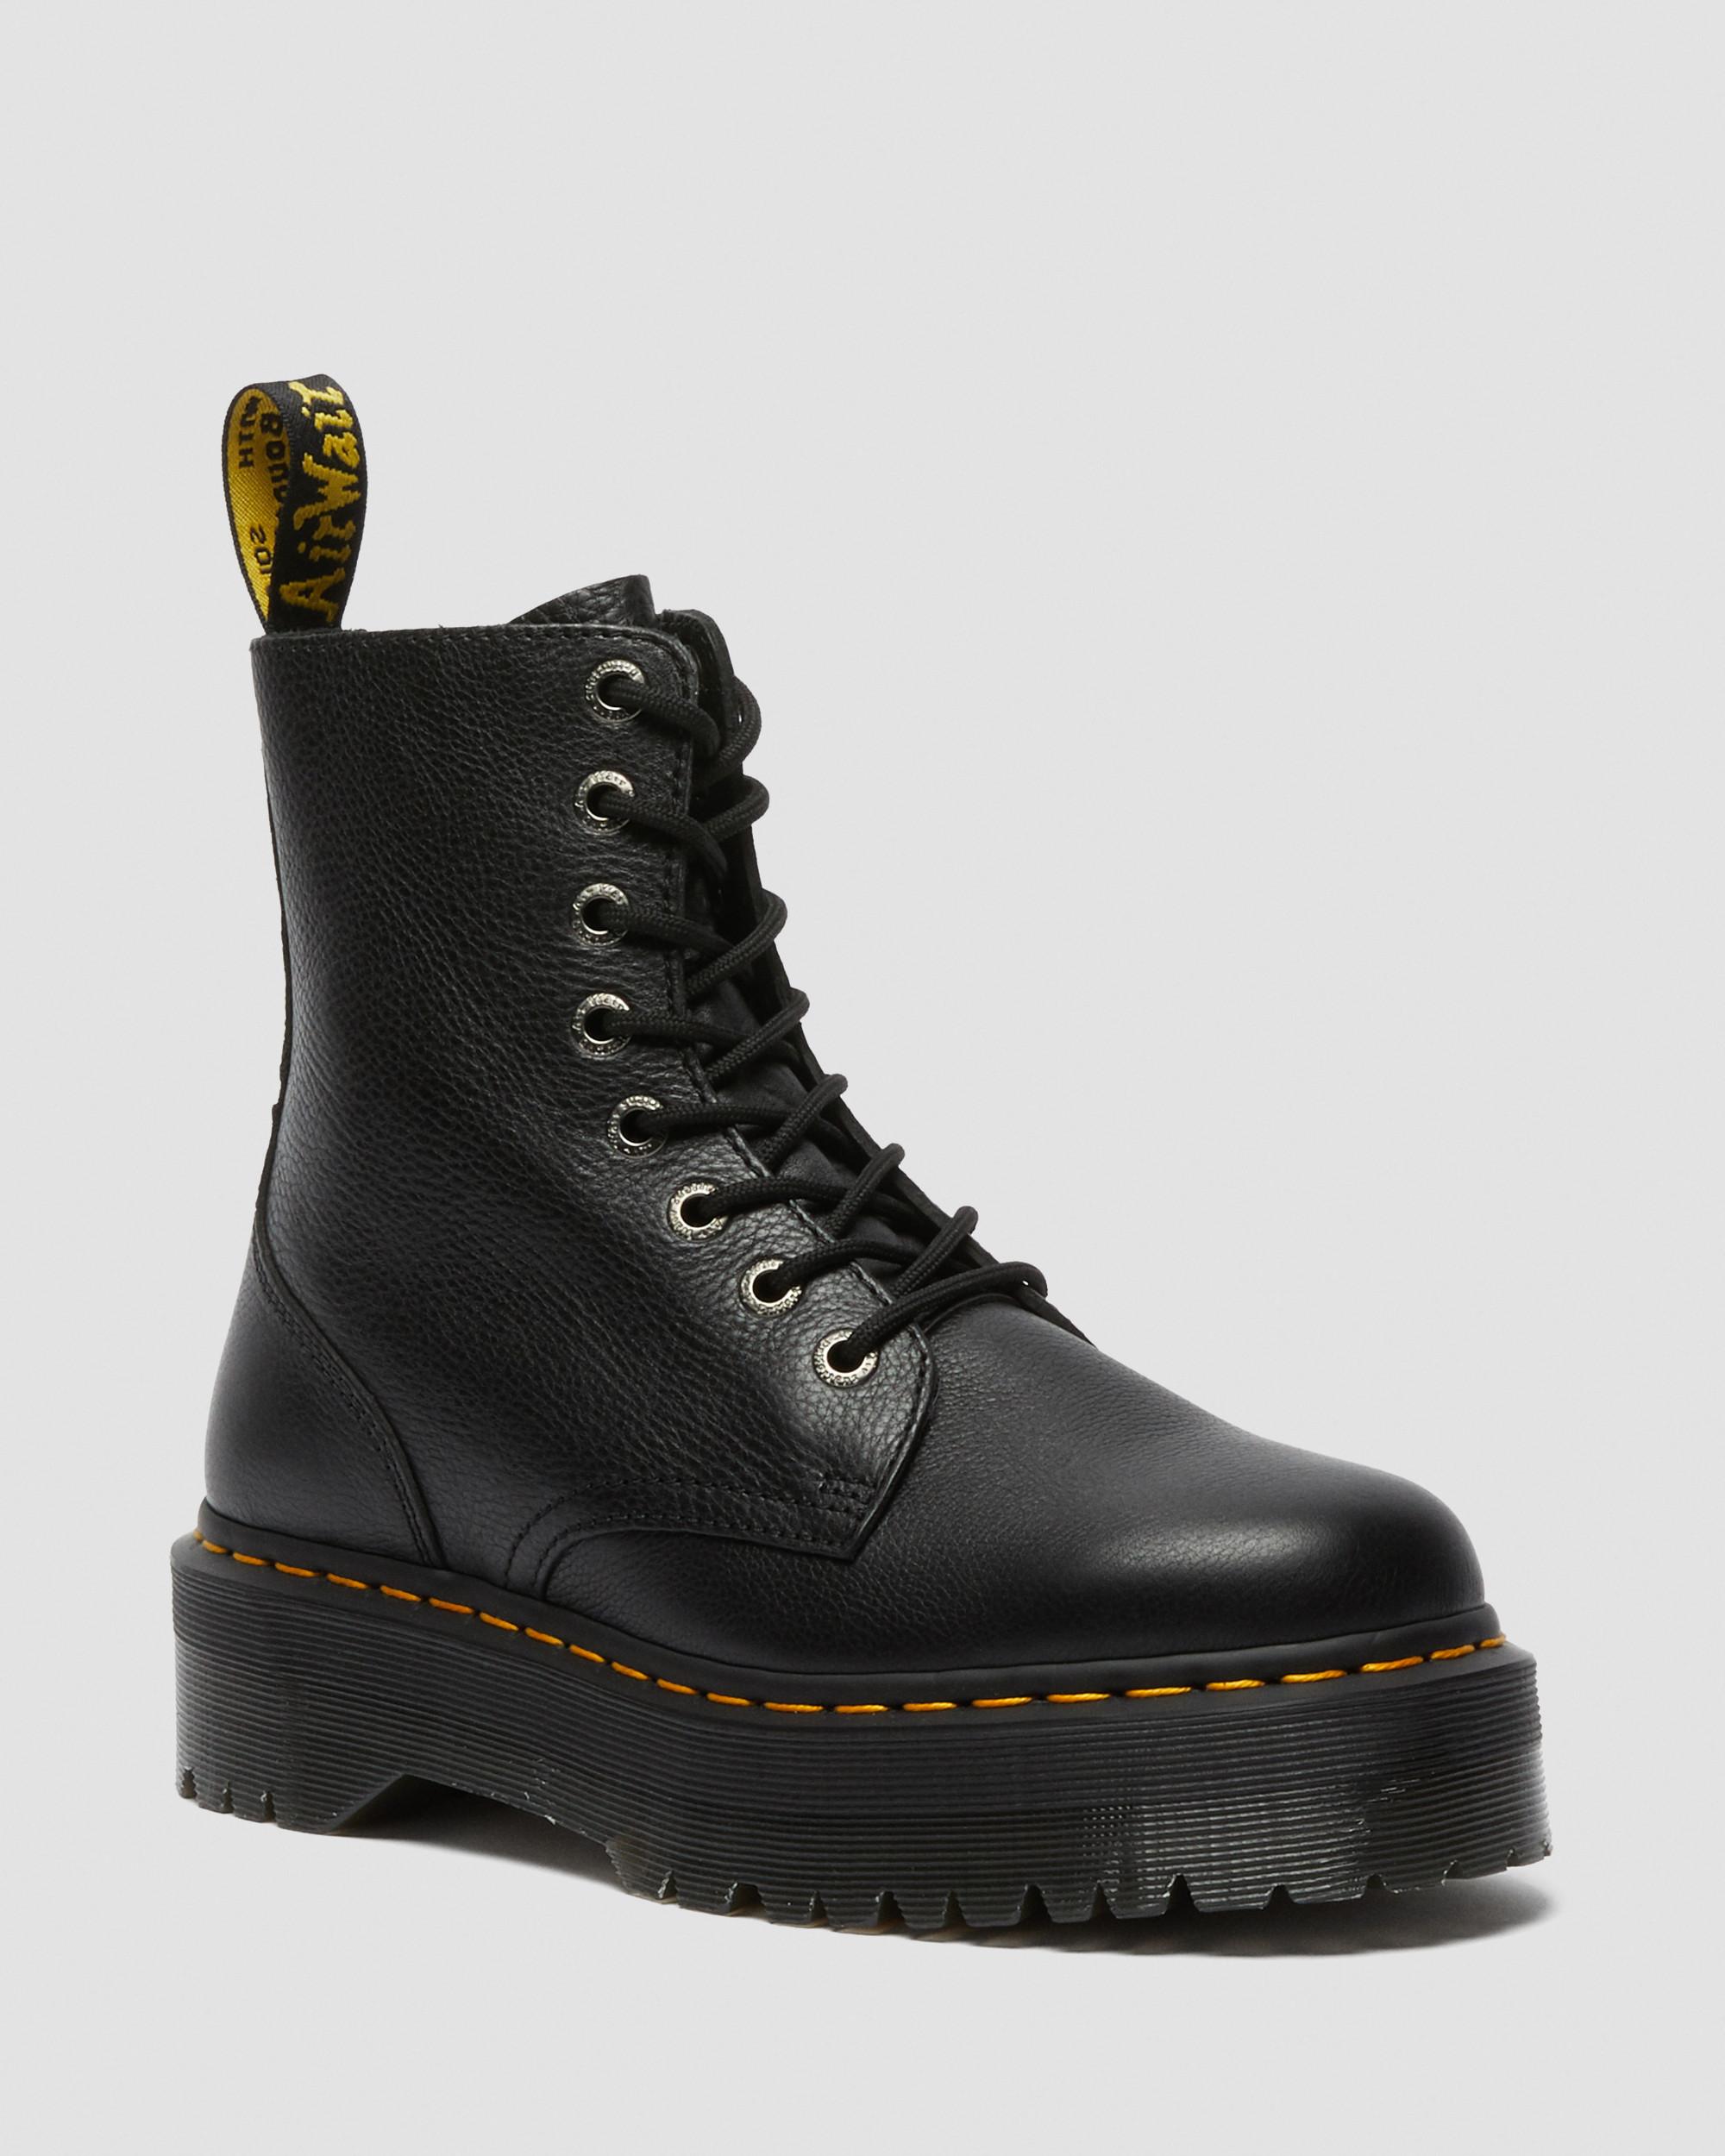 Jadon III Pisa Leather Platform Boots in Black | Dr. Martens